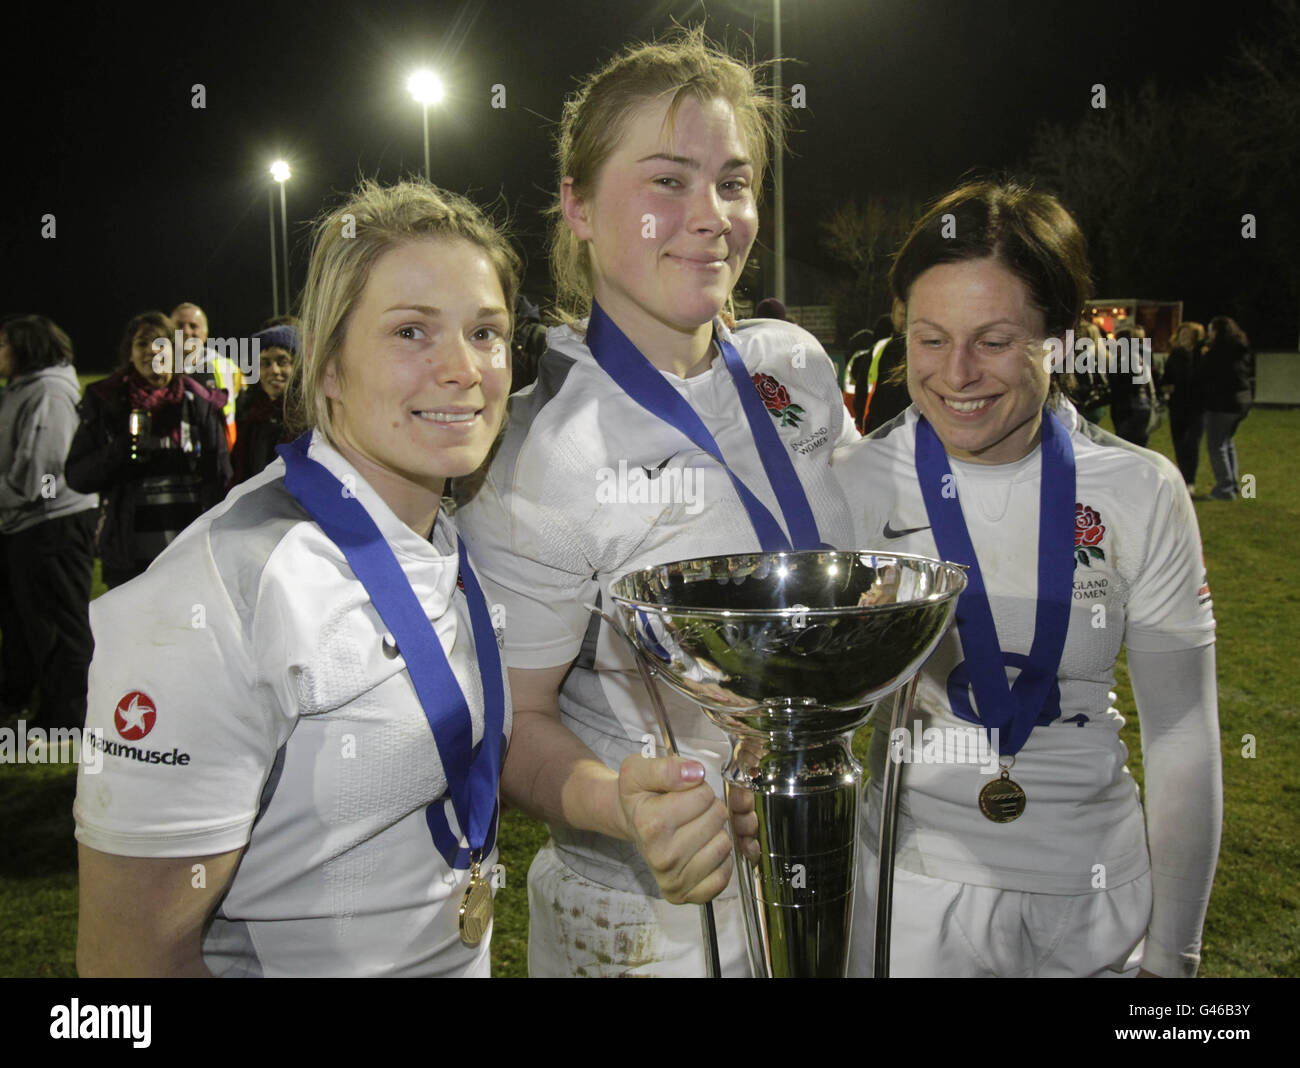 Rugby Union - Championnat des 6 nations des femmes 2011 - femmes d'Irlande contre femmes d'Angleterre - Ashbourne RFC.L'Angleterre célèbre sa victoire lors du championnat des 6 nations Womens à Ashbourne RFC, Co. Meath. Banque D'Images